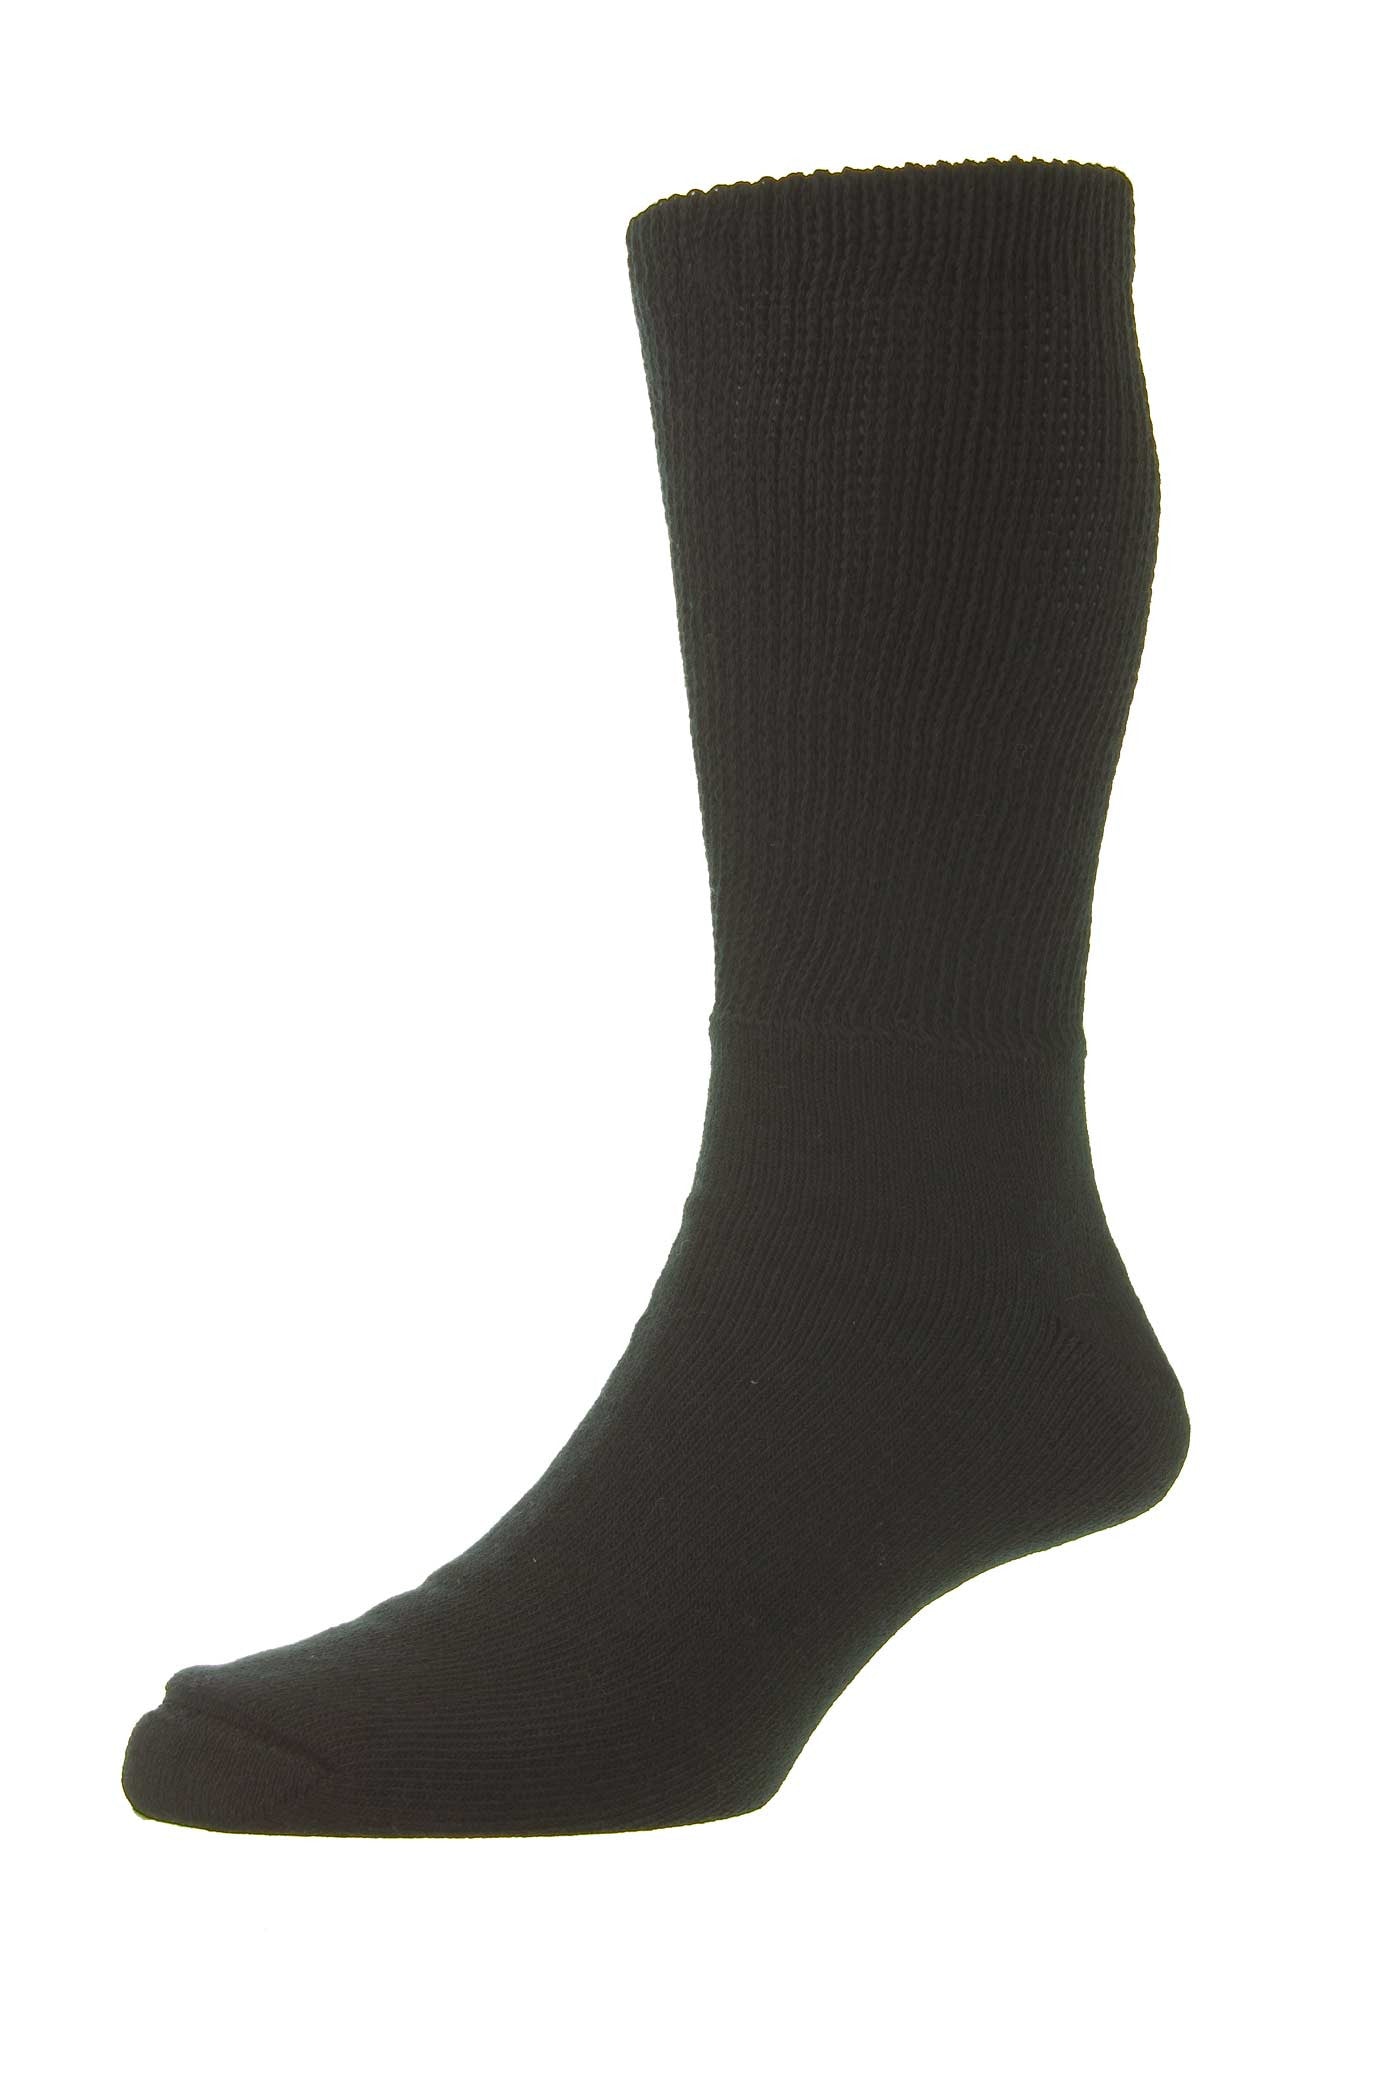 HJ Socks HJ1351 Mens Cotton Diabetic Socks